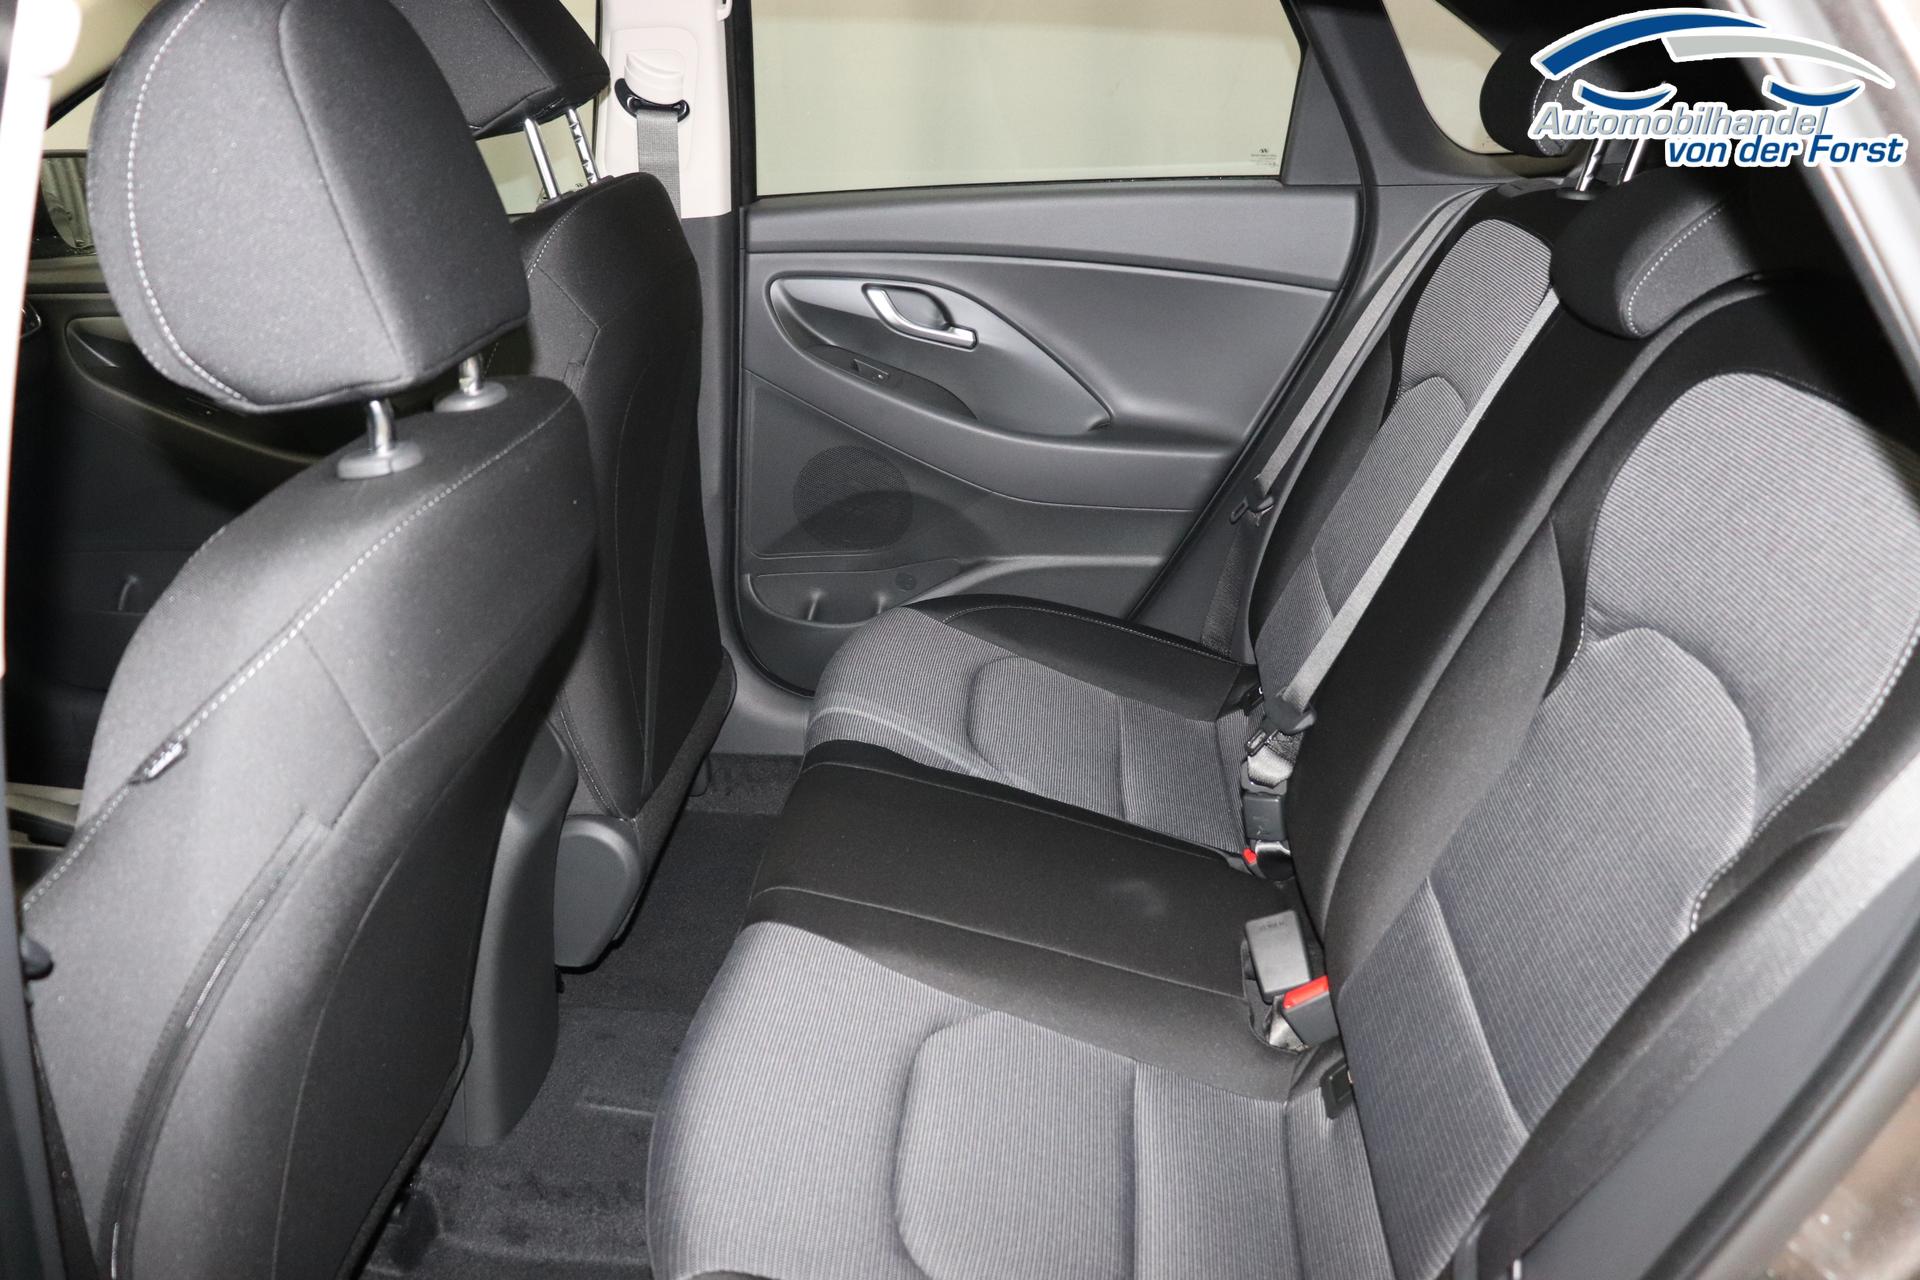 Hyundai i30 Comfort 1.0 T-GDi 7DCT FL MY23, Klimaanlage, Sitzheizung,  Lederlenkrad, Radio DAB, Freisprecheinrichtung, Lichtsensor, Tempomat,  Einparkhilfe hinten, Nebelscheinwerfer, 16 Zoll Leichtmetallfelgen, uvm.  EU-Neuwagen zum besten Preis